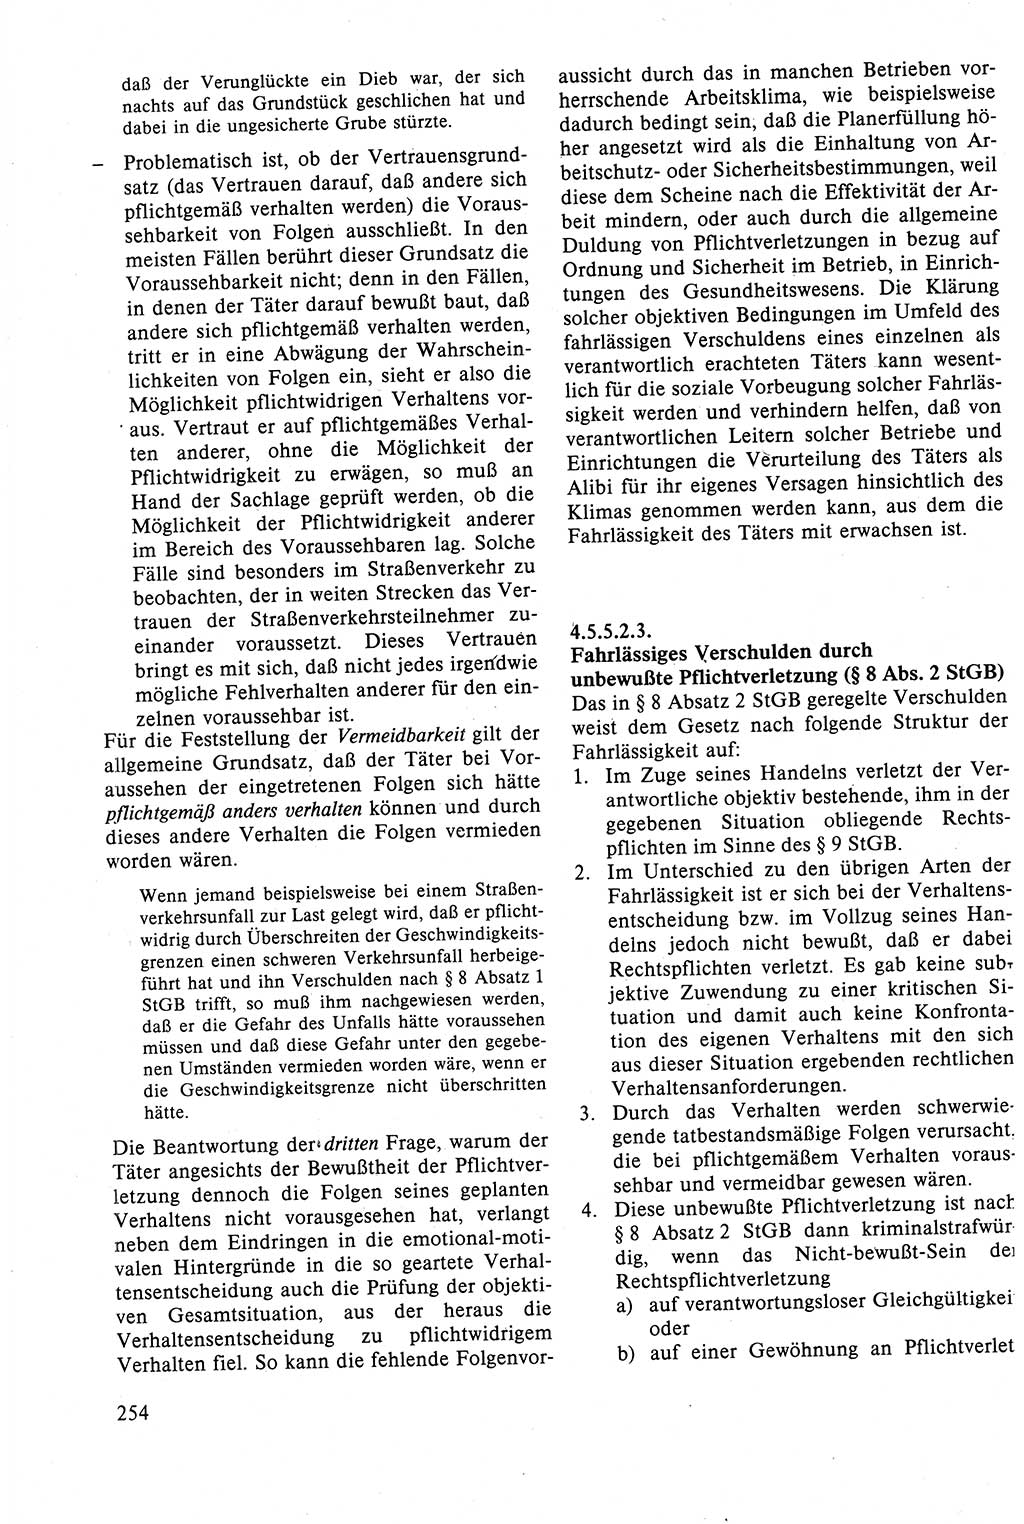 Strafrecht der DDR (Deutsche Demokratische Republik), Lehrbuch 1988, Seite 254 (Strafr. DDR Lb. 1988, S. 254)